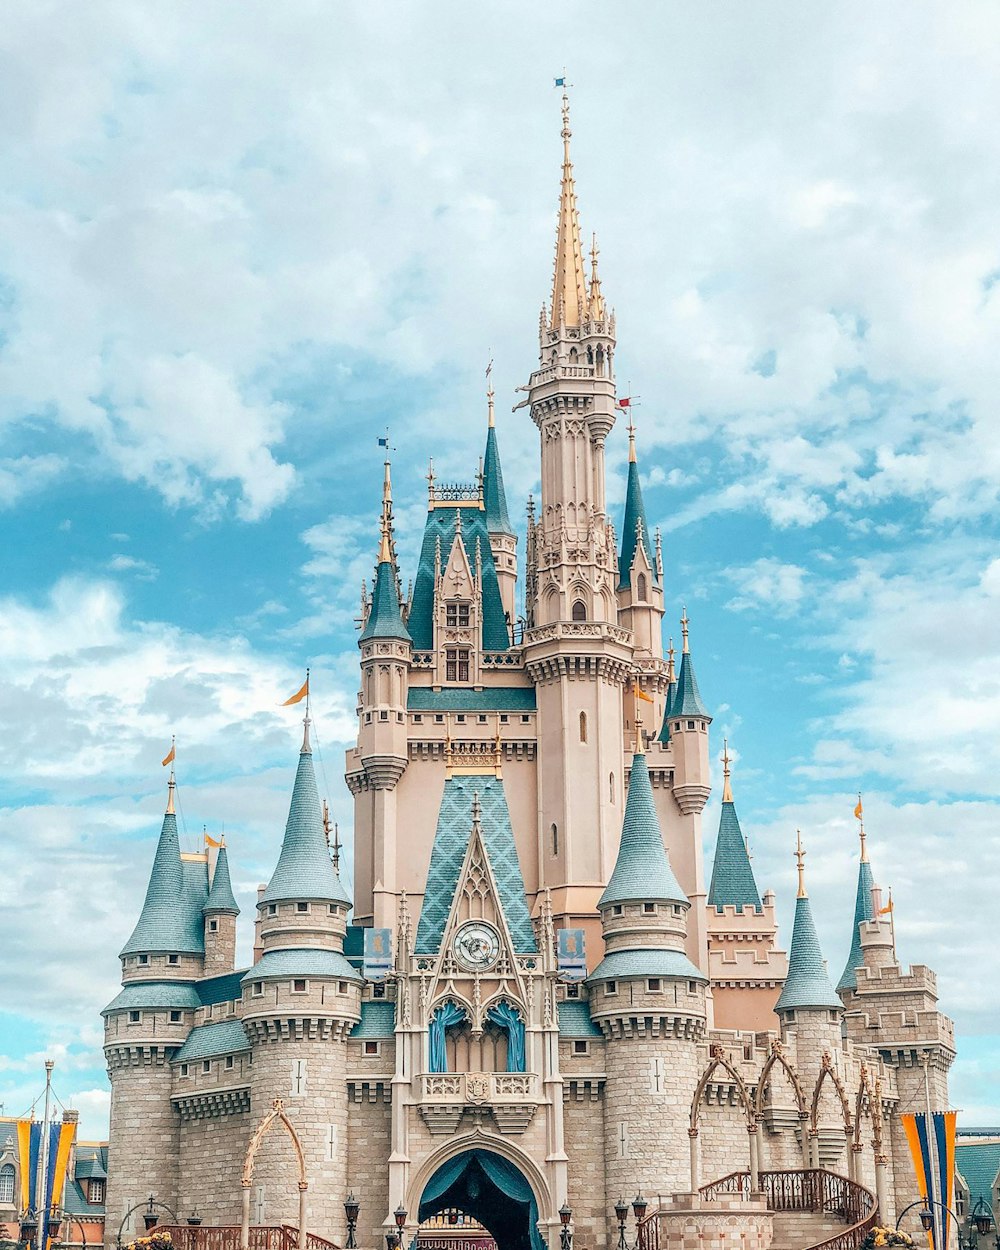 Más de 500 imágenes de Disney World | Descargar imágenes gratis en Unsplash